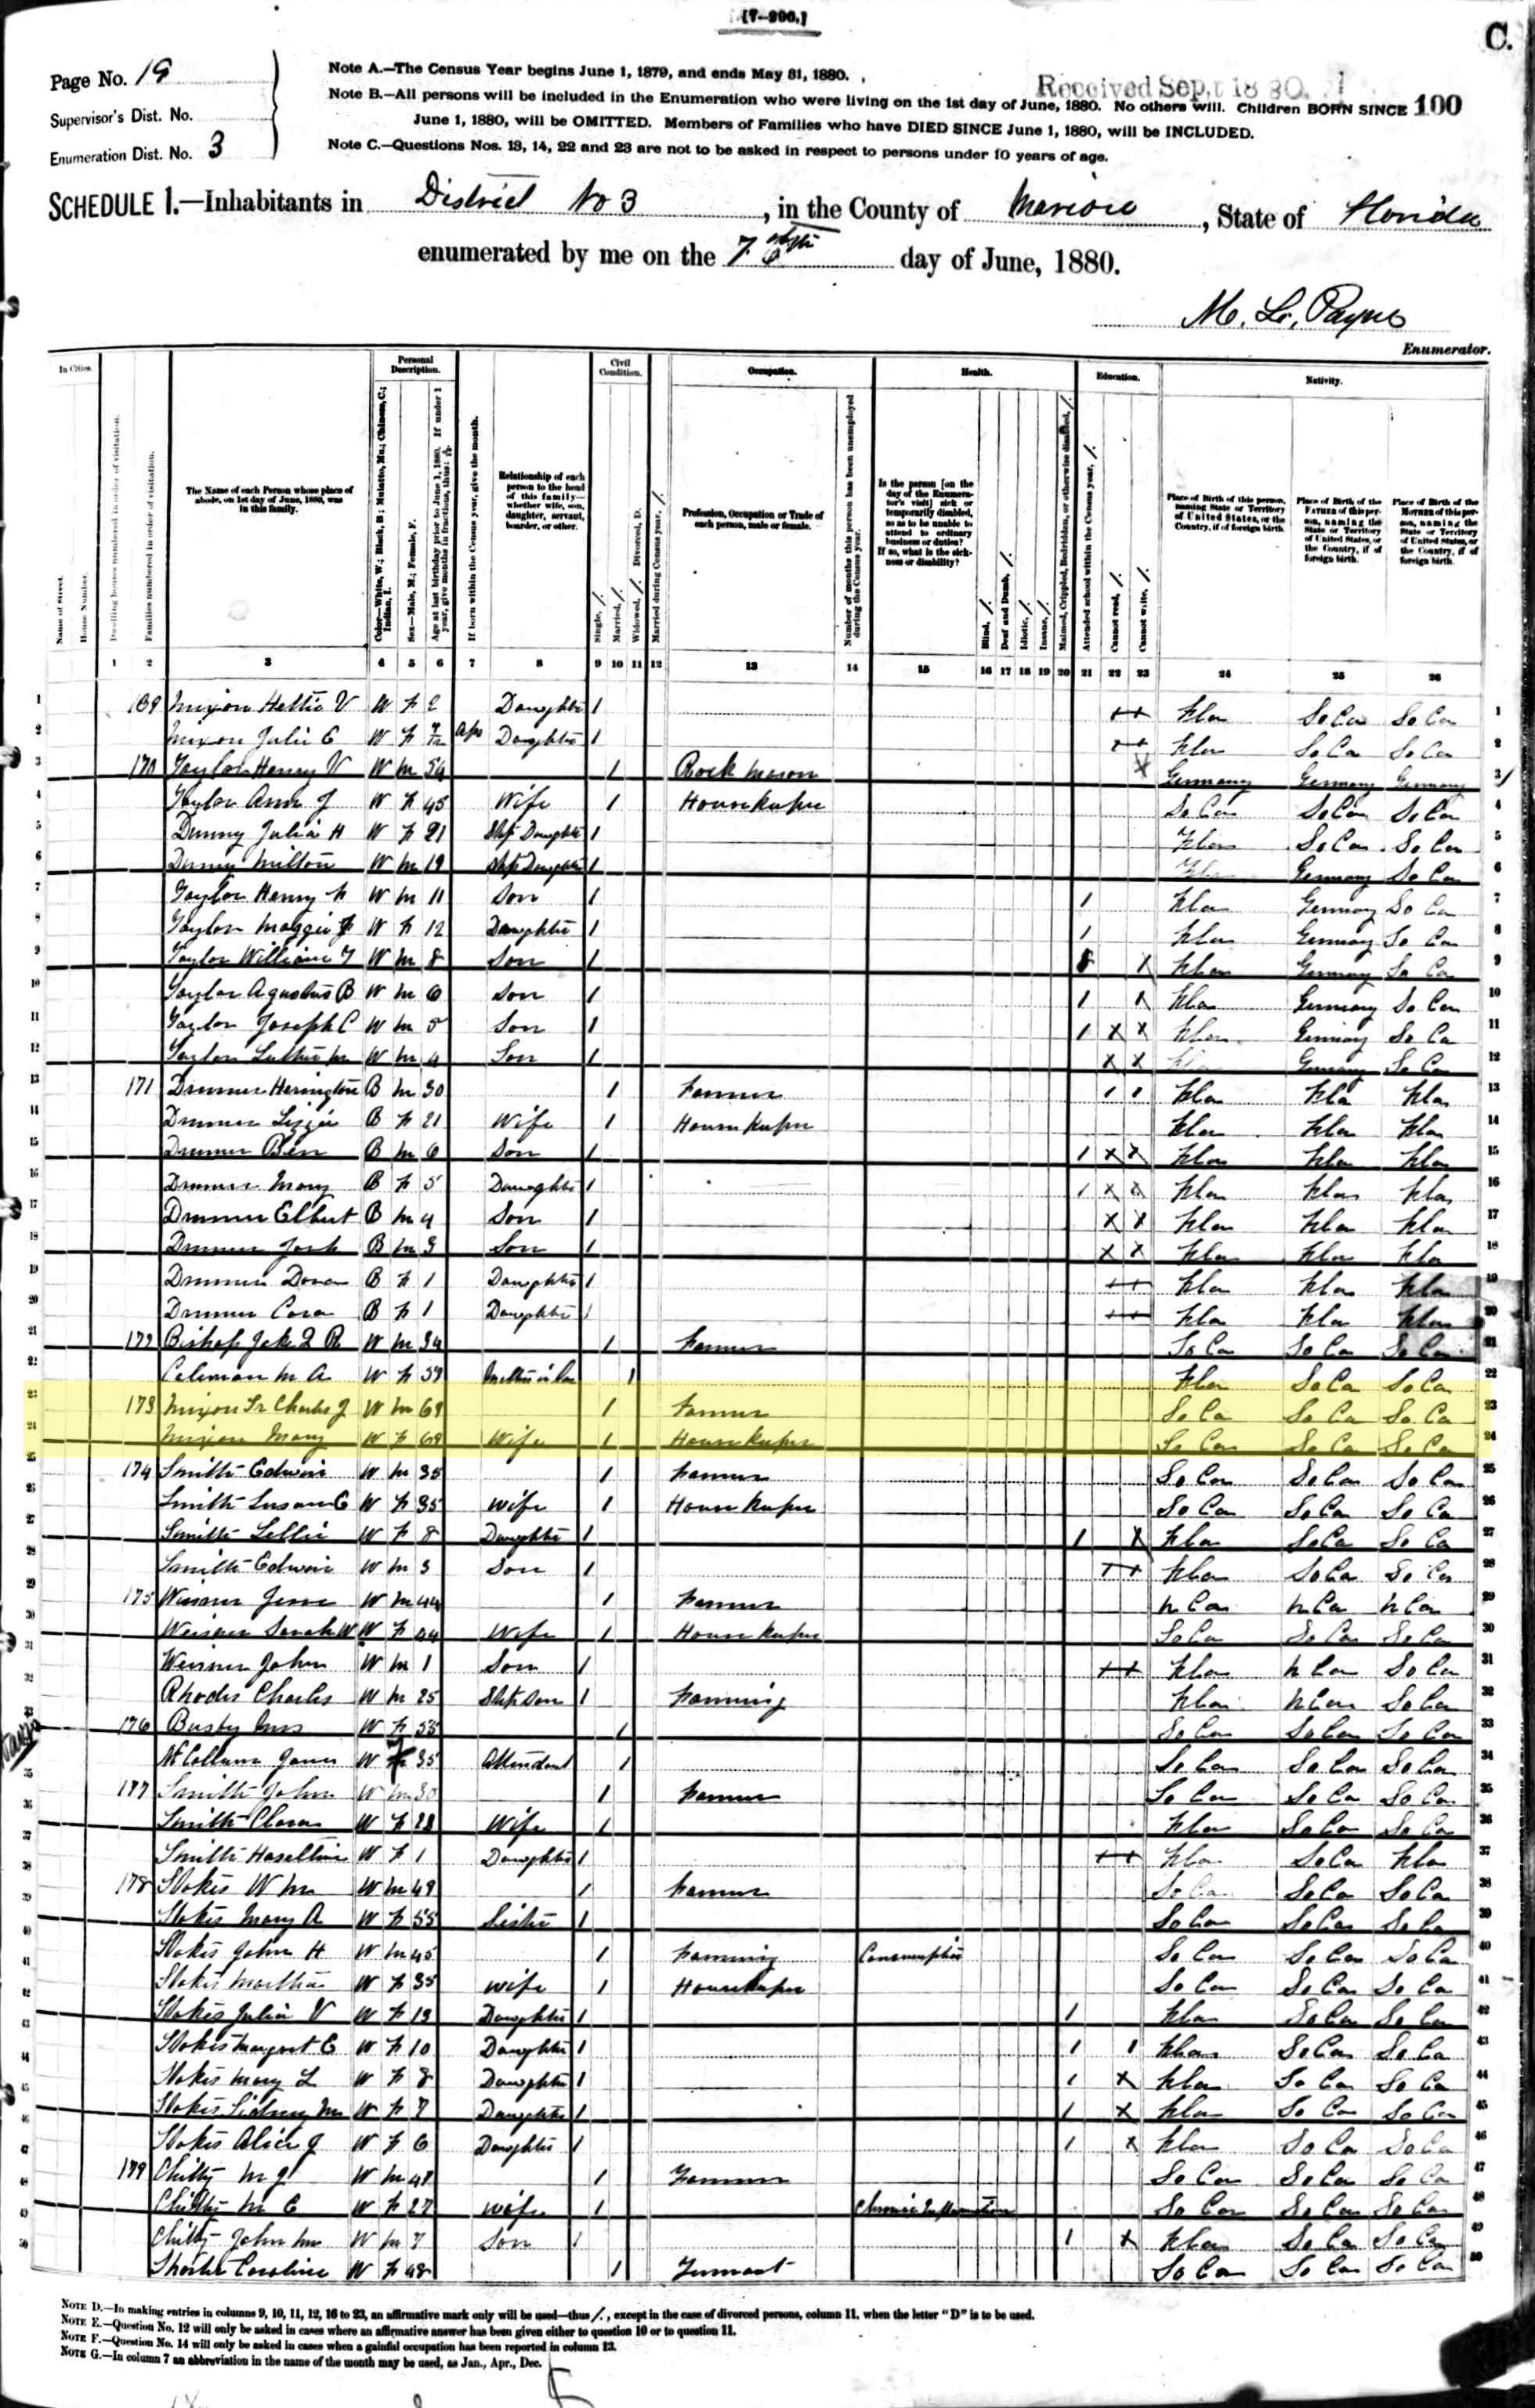 Census 1800